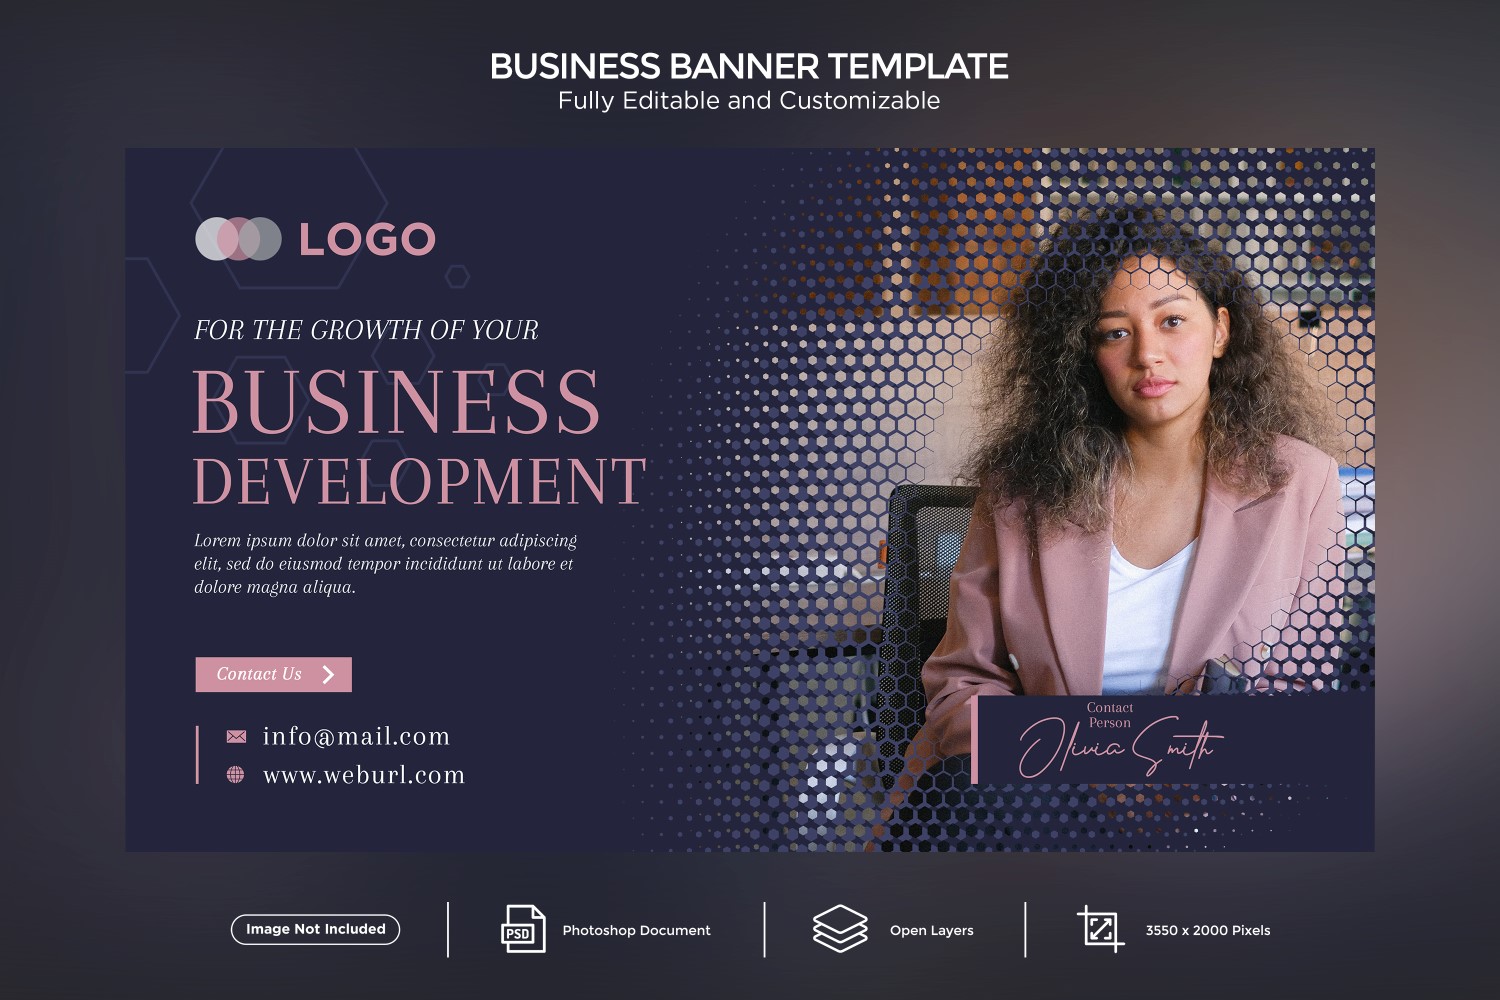 Business Development Banner Design Template.